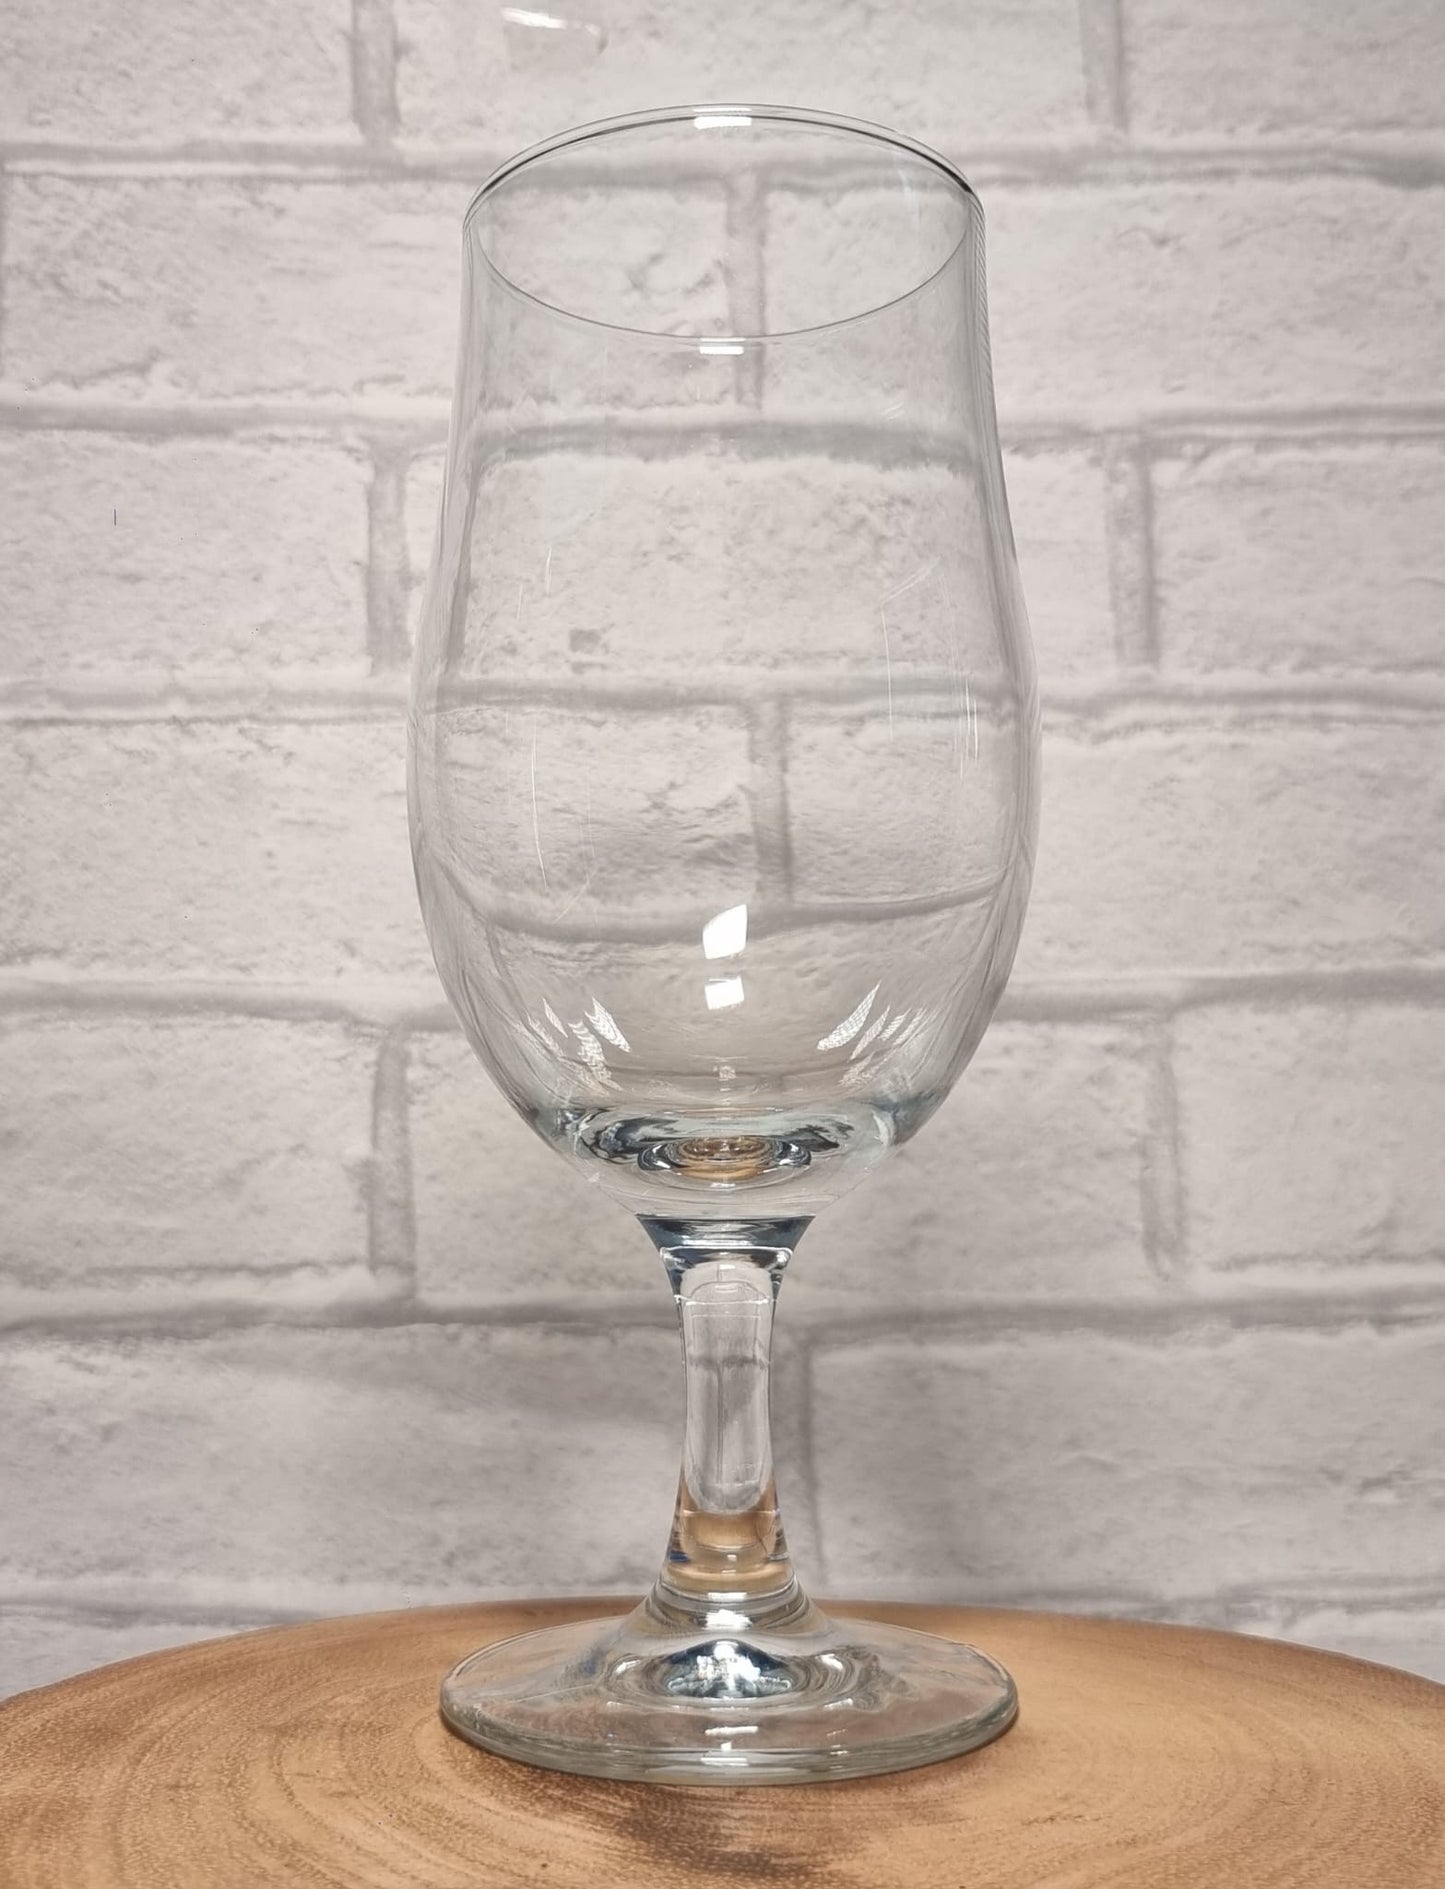 Personalised | Custom Printed Beer / Wine / Whiskey Glasses